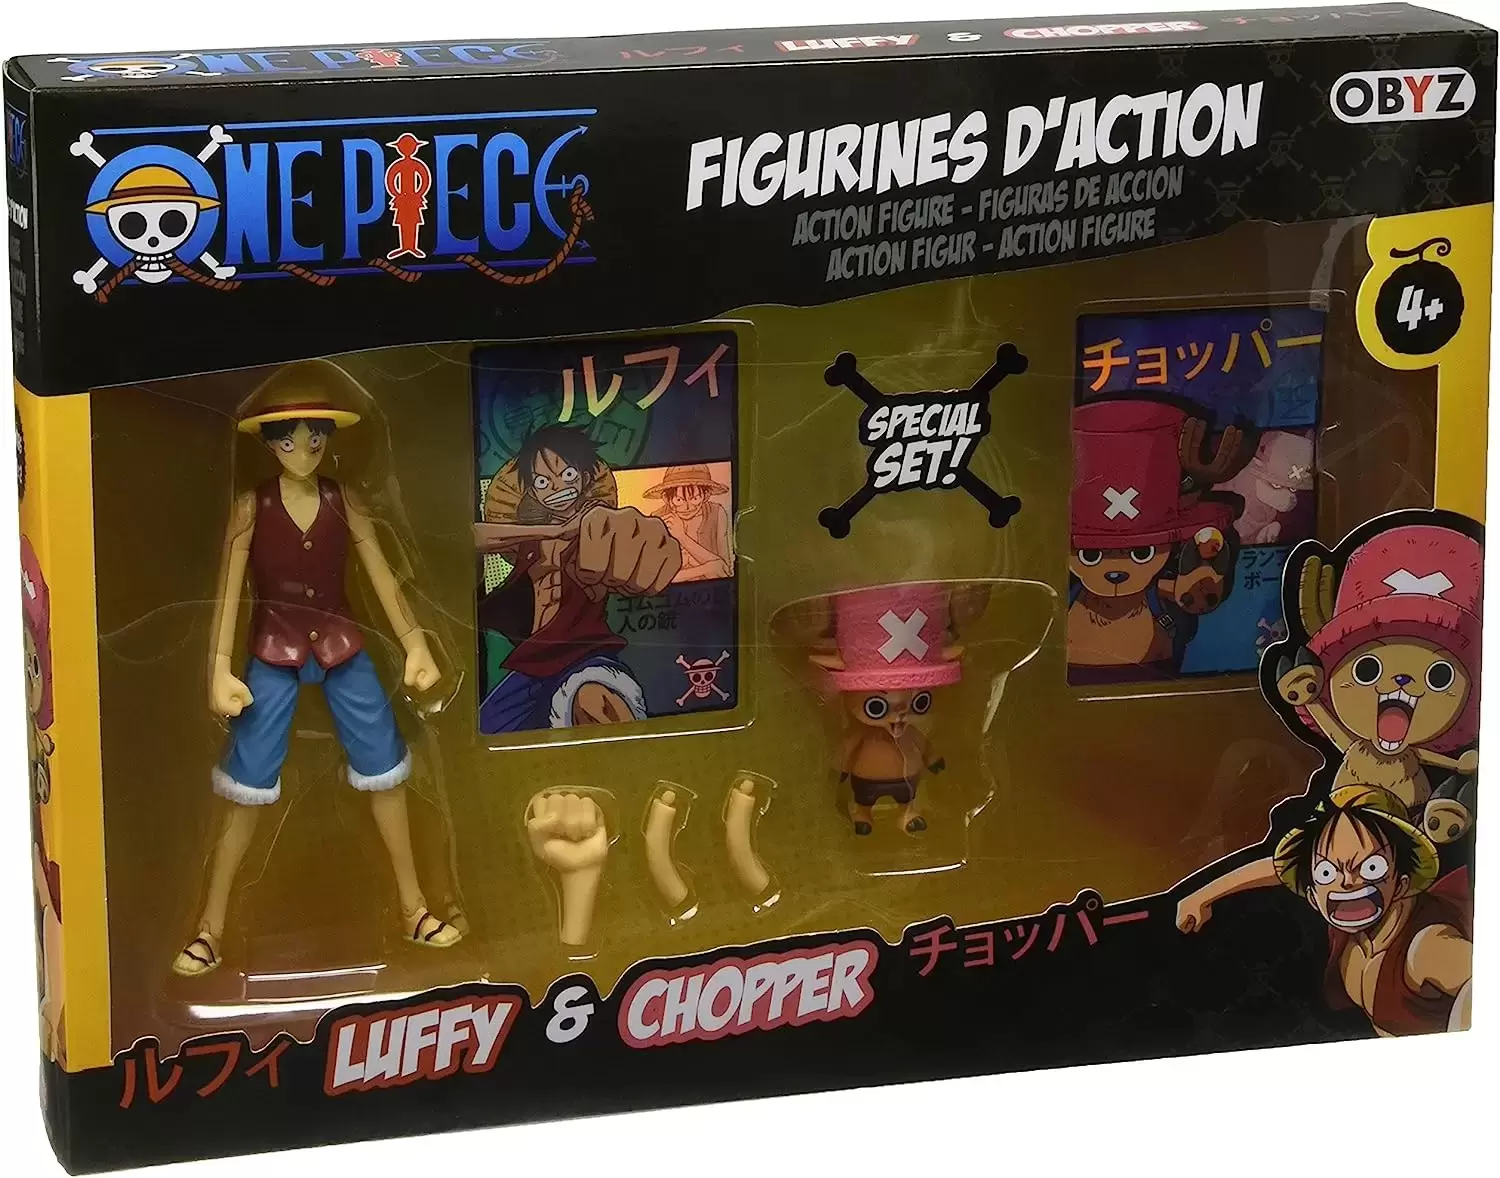 One Piece Obyz - Luffy & Chopper